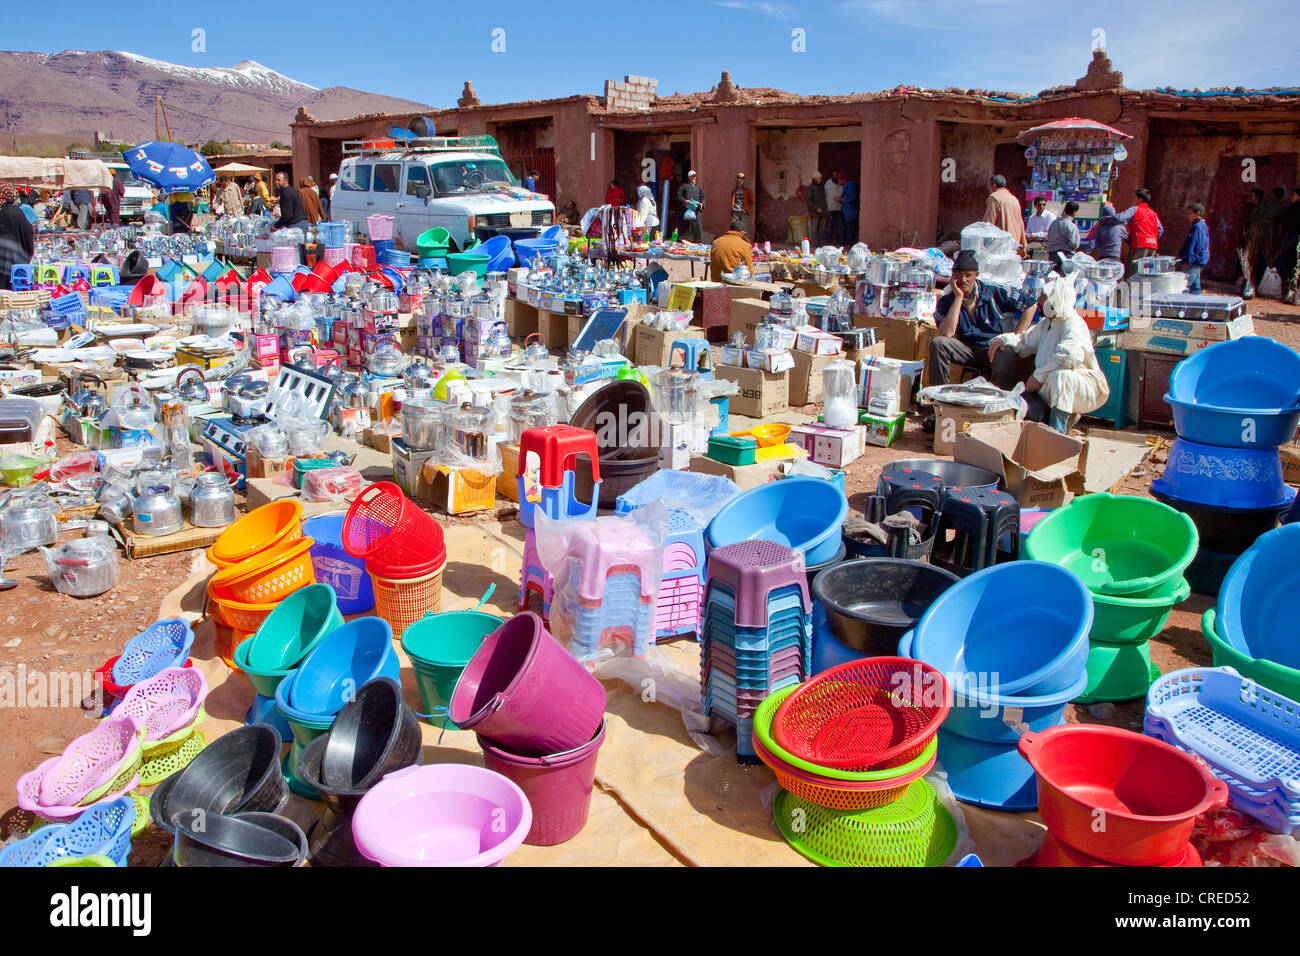 Proveedor tazones de plástico de venta en un mercado o souk, Telouet, las montañas del Alto Atlas, Marruecos, África Foto de stock